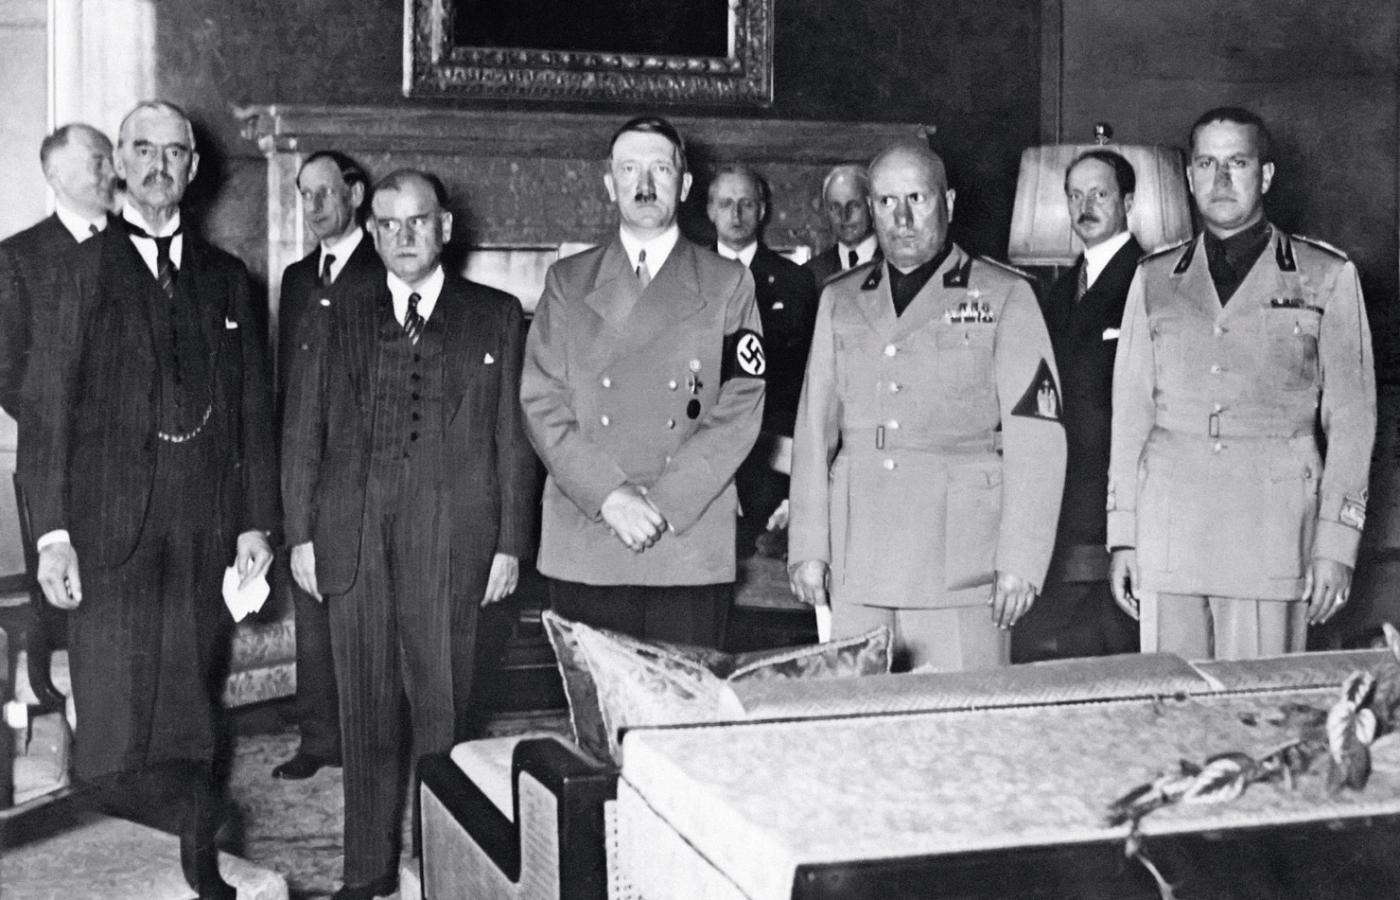 Po podpisaniu traktatu monachijskiego, 30 września 1938 r. W pierwszym rzędzie stoją, od lewej: Neville Chamberlain, Edouard Daladier, Adolf Hitler, Benito Mussolini, Galeazzo Ciano.